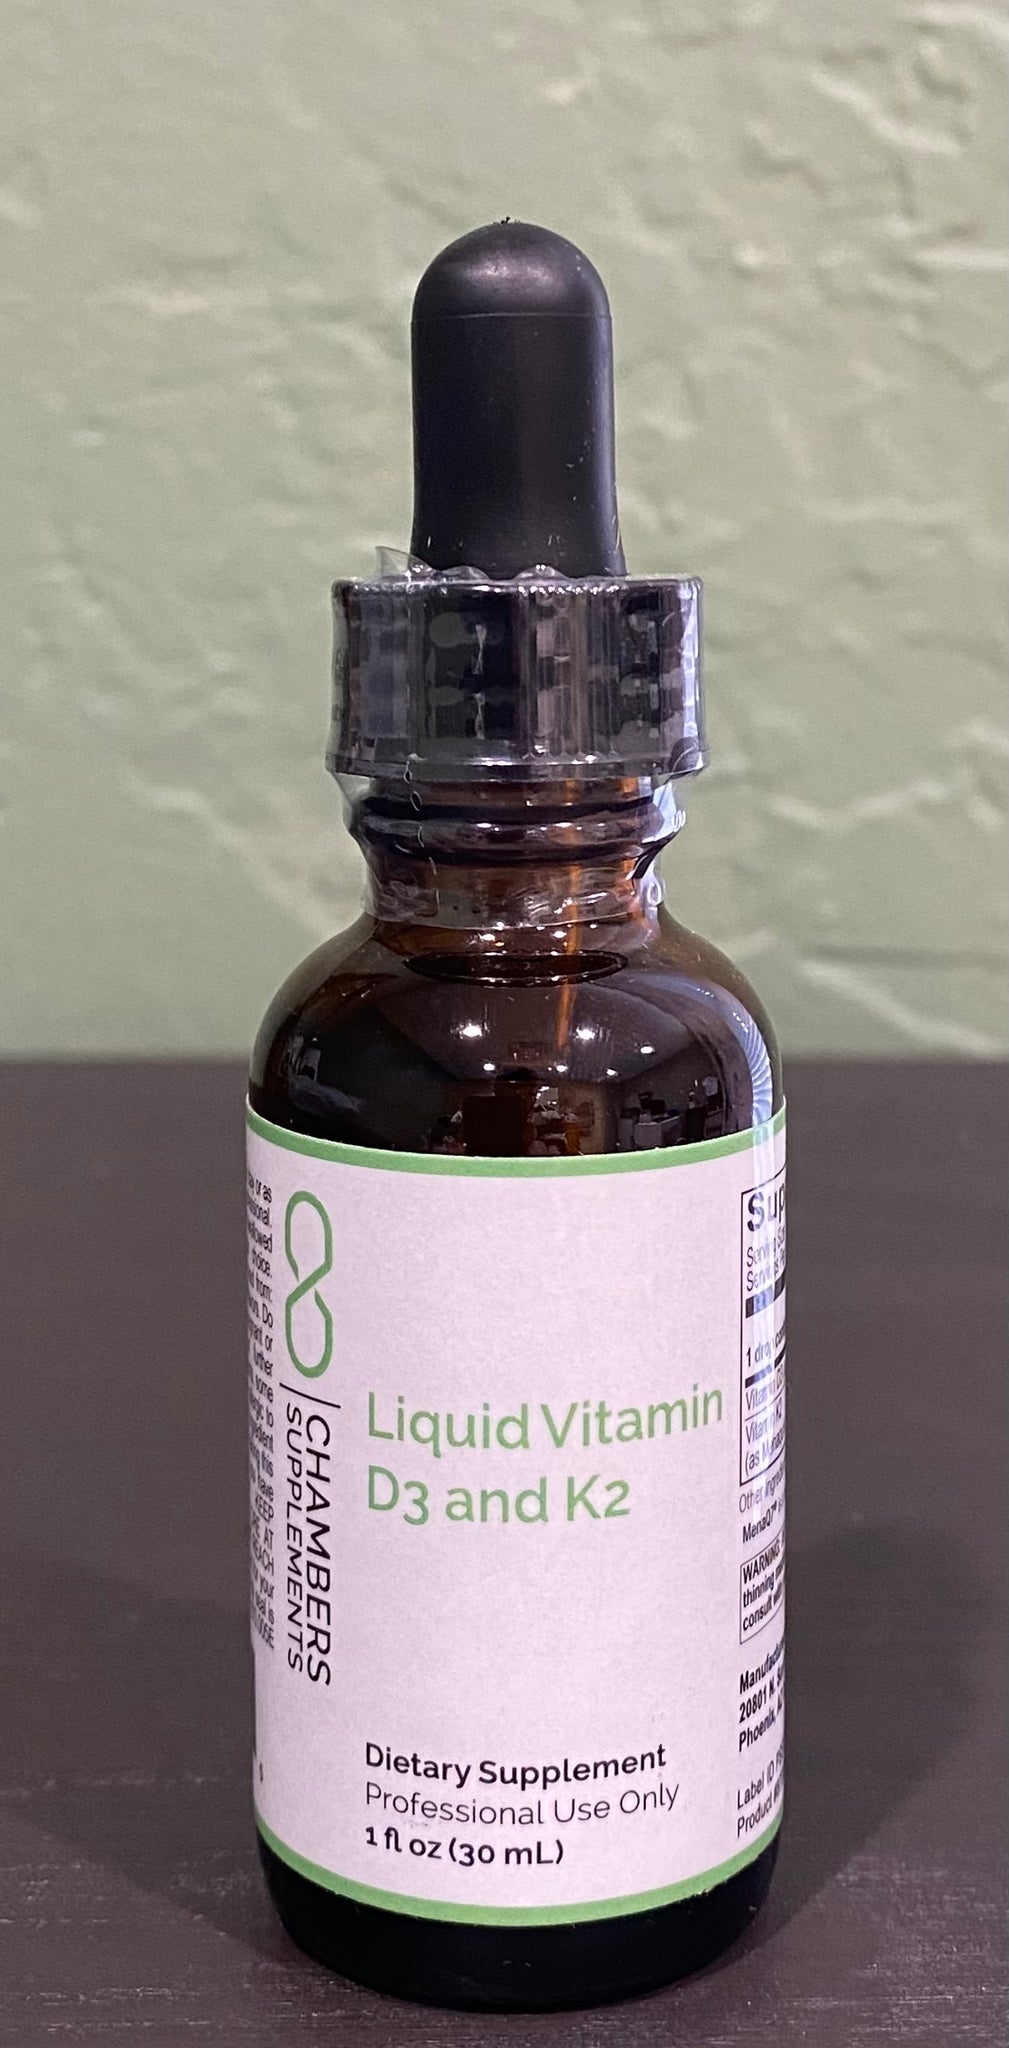 Liquid Vitamin D3 and K2